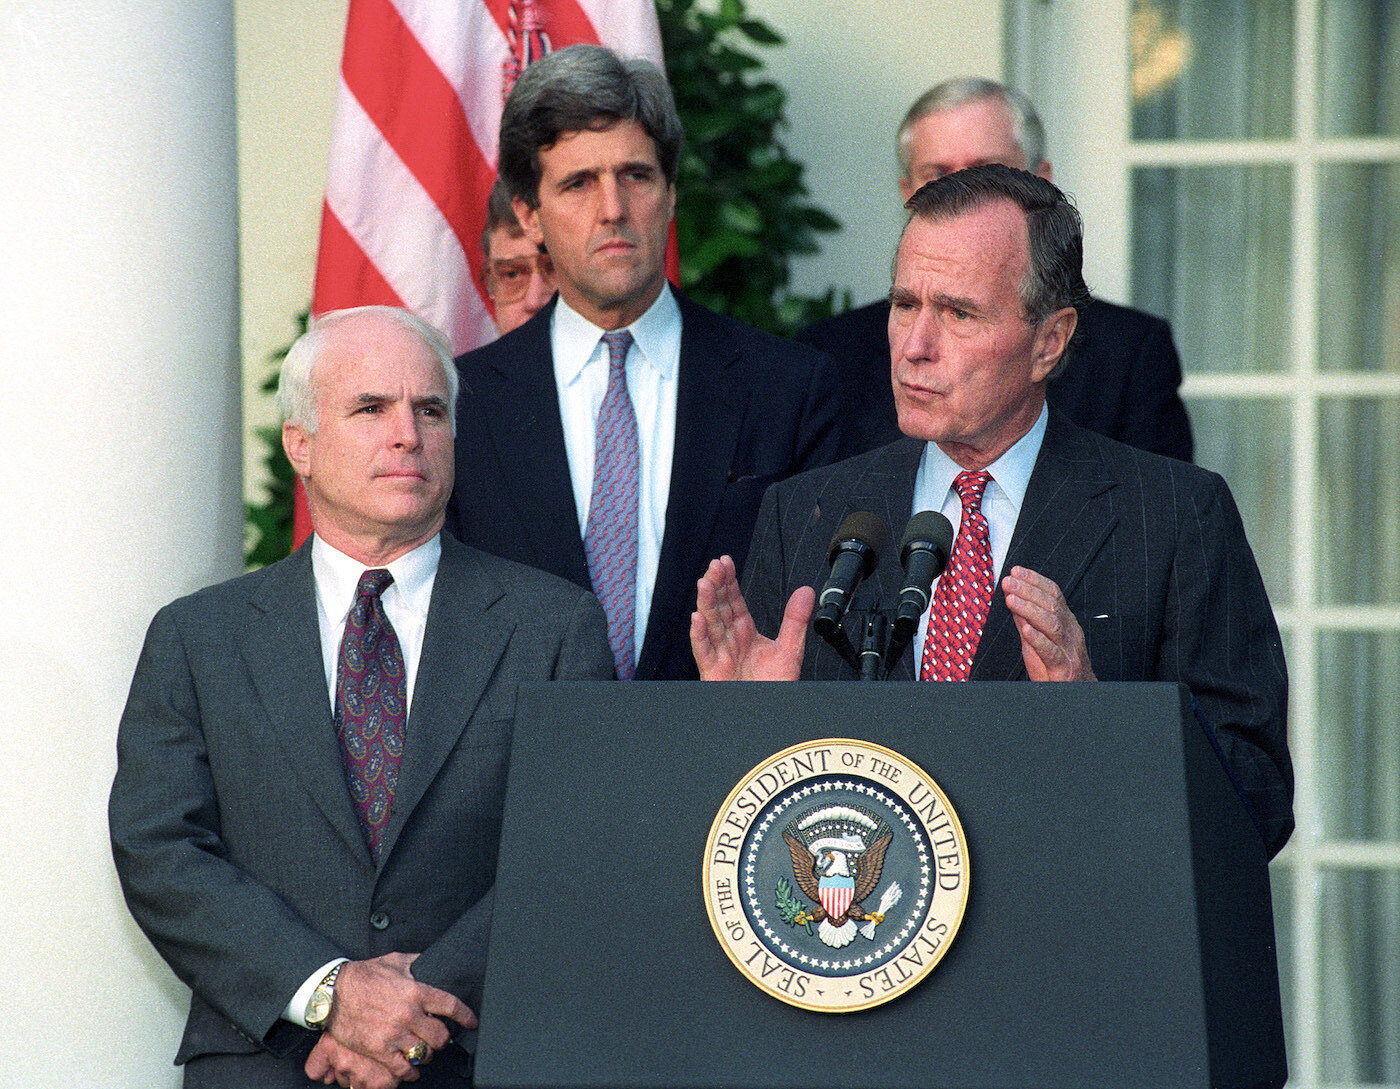 <p>23 октября&nbsp;1992 года.&nbsp;Президент Джордж Буш с сенаторами Джоном Маккейном и Джоном Керри&nbsp;обращается к репортерам в Белом доме по поводу&nbsp;выпуска&nbsp;Вьетнамом&nbsp;документов о пропавших без вести в Юго-Восточной Азии. Эта информация позволит США &laquo;начать писать последнюю главу войны во Вьетнаме&raquo;</p>

<p>&nbsp;</p>